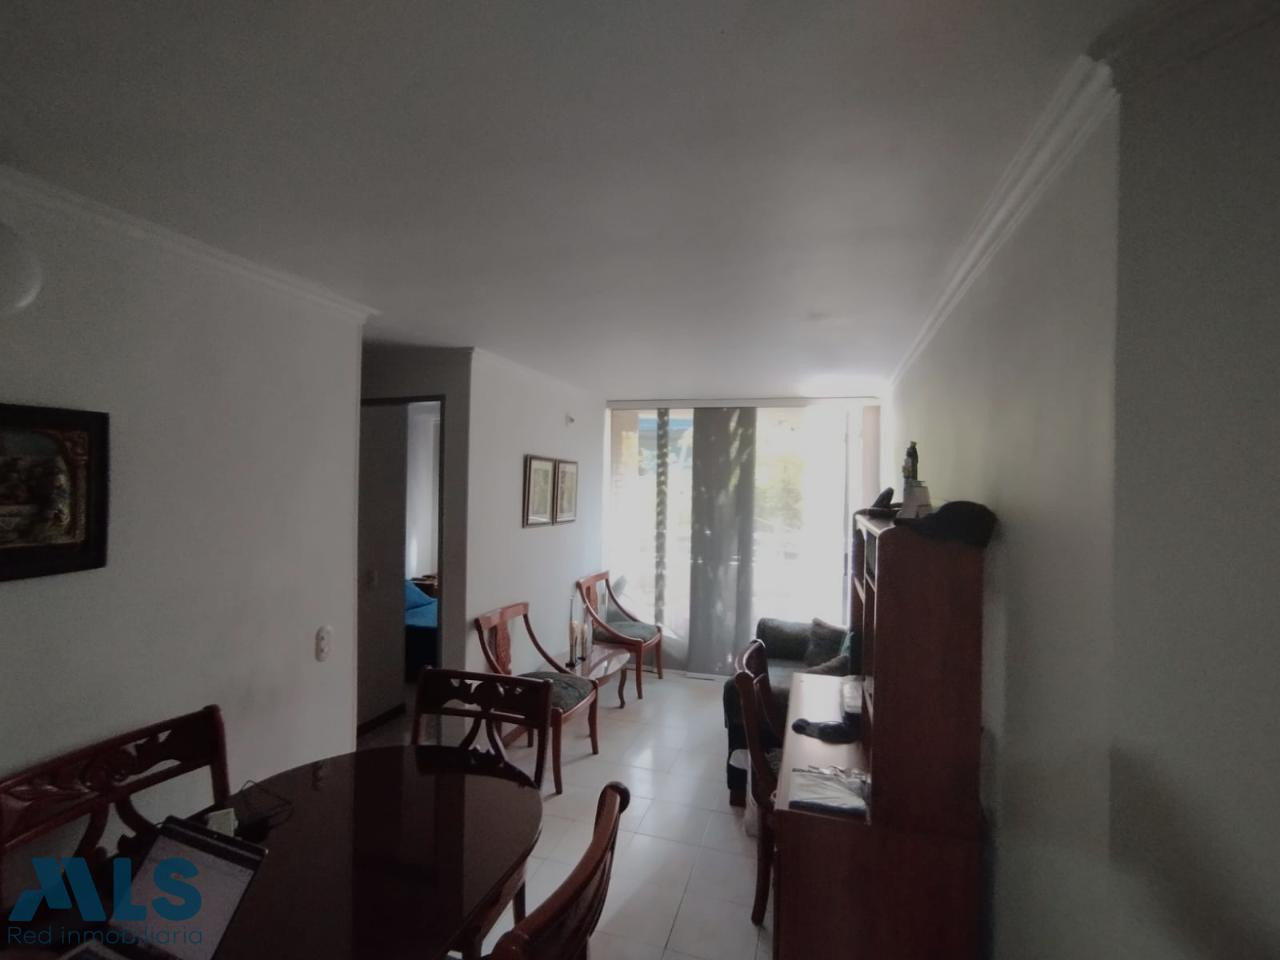 Venta de apartamento ubicación central en Medellín medellin - centro